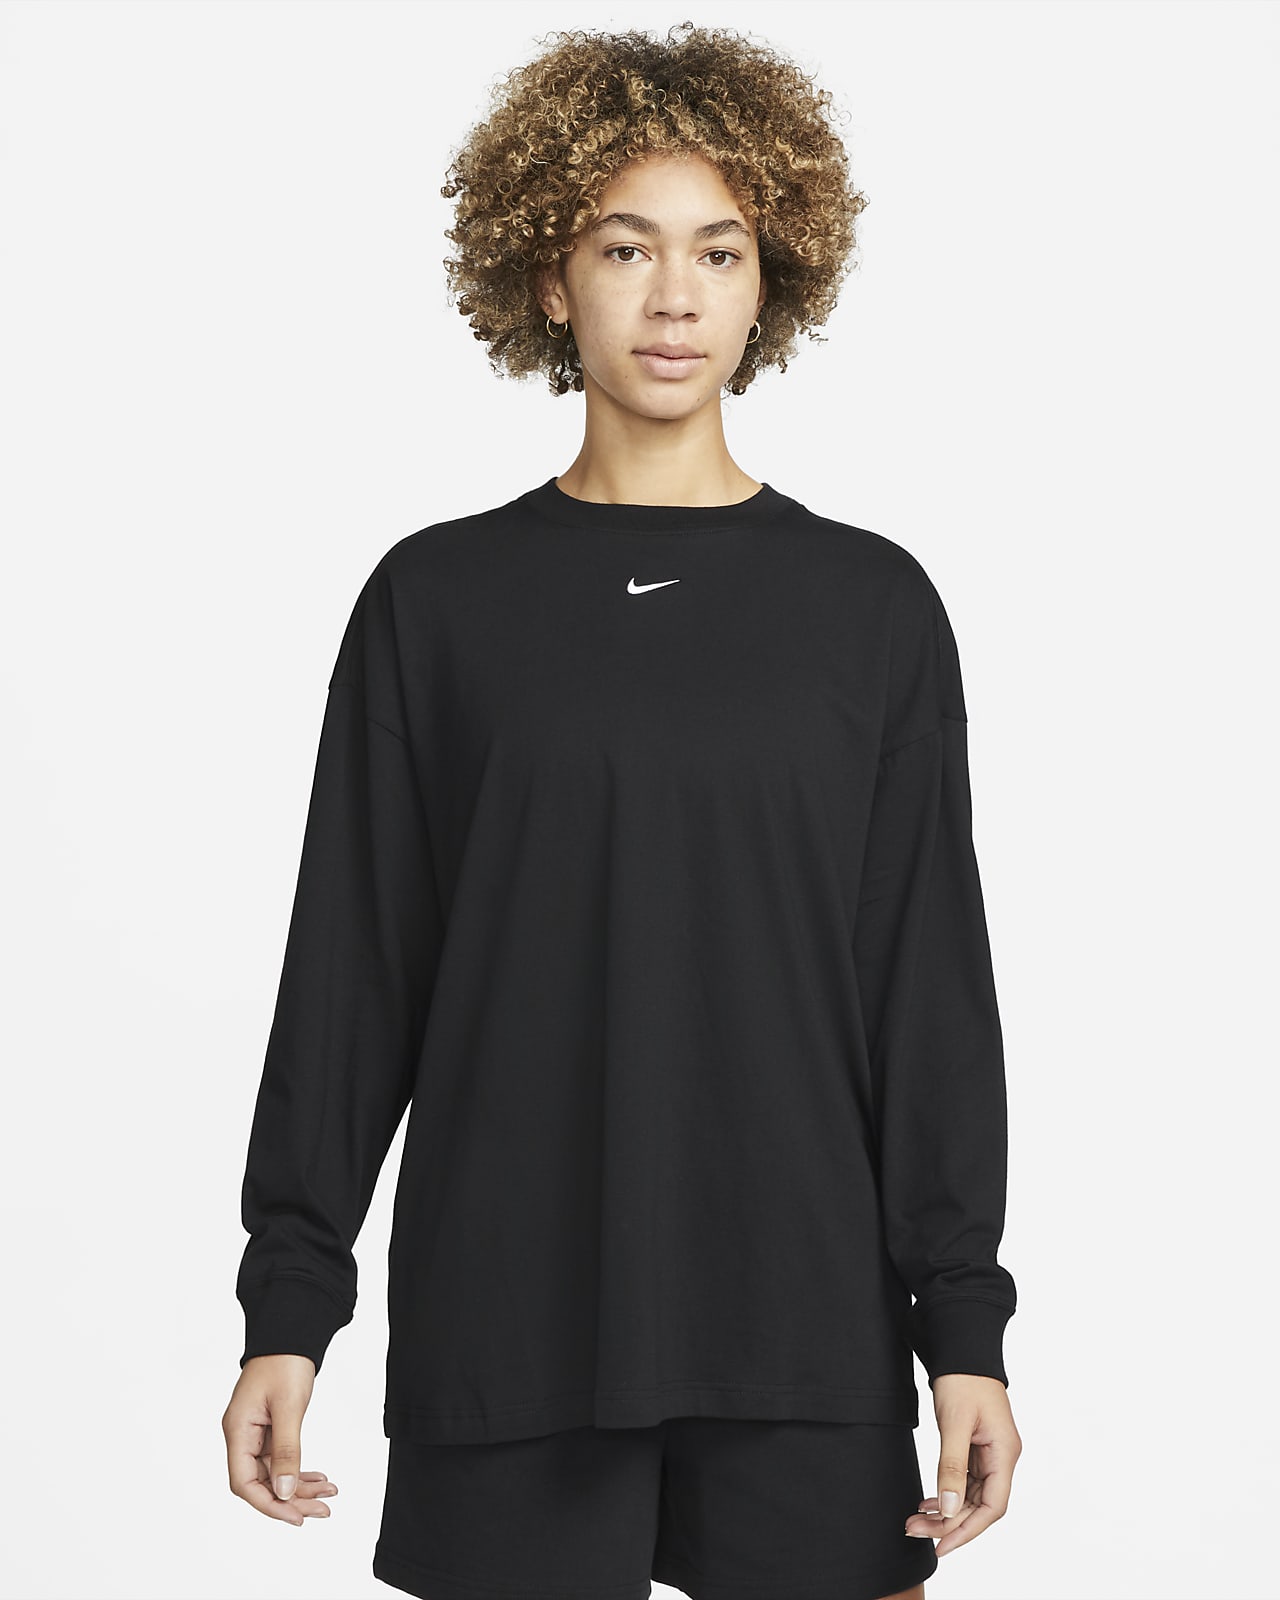 Nike Sportswear Essentials Women's Long-Sleeve Top